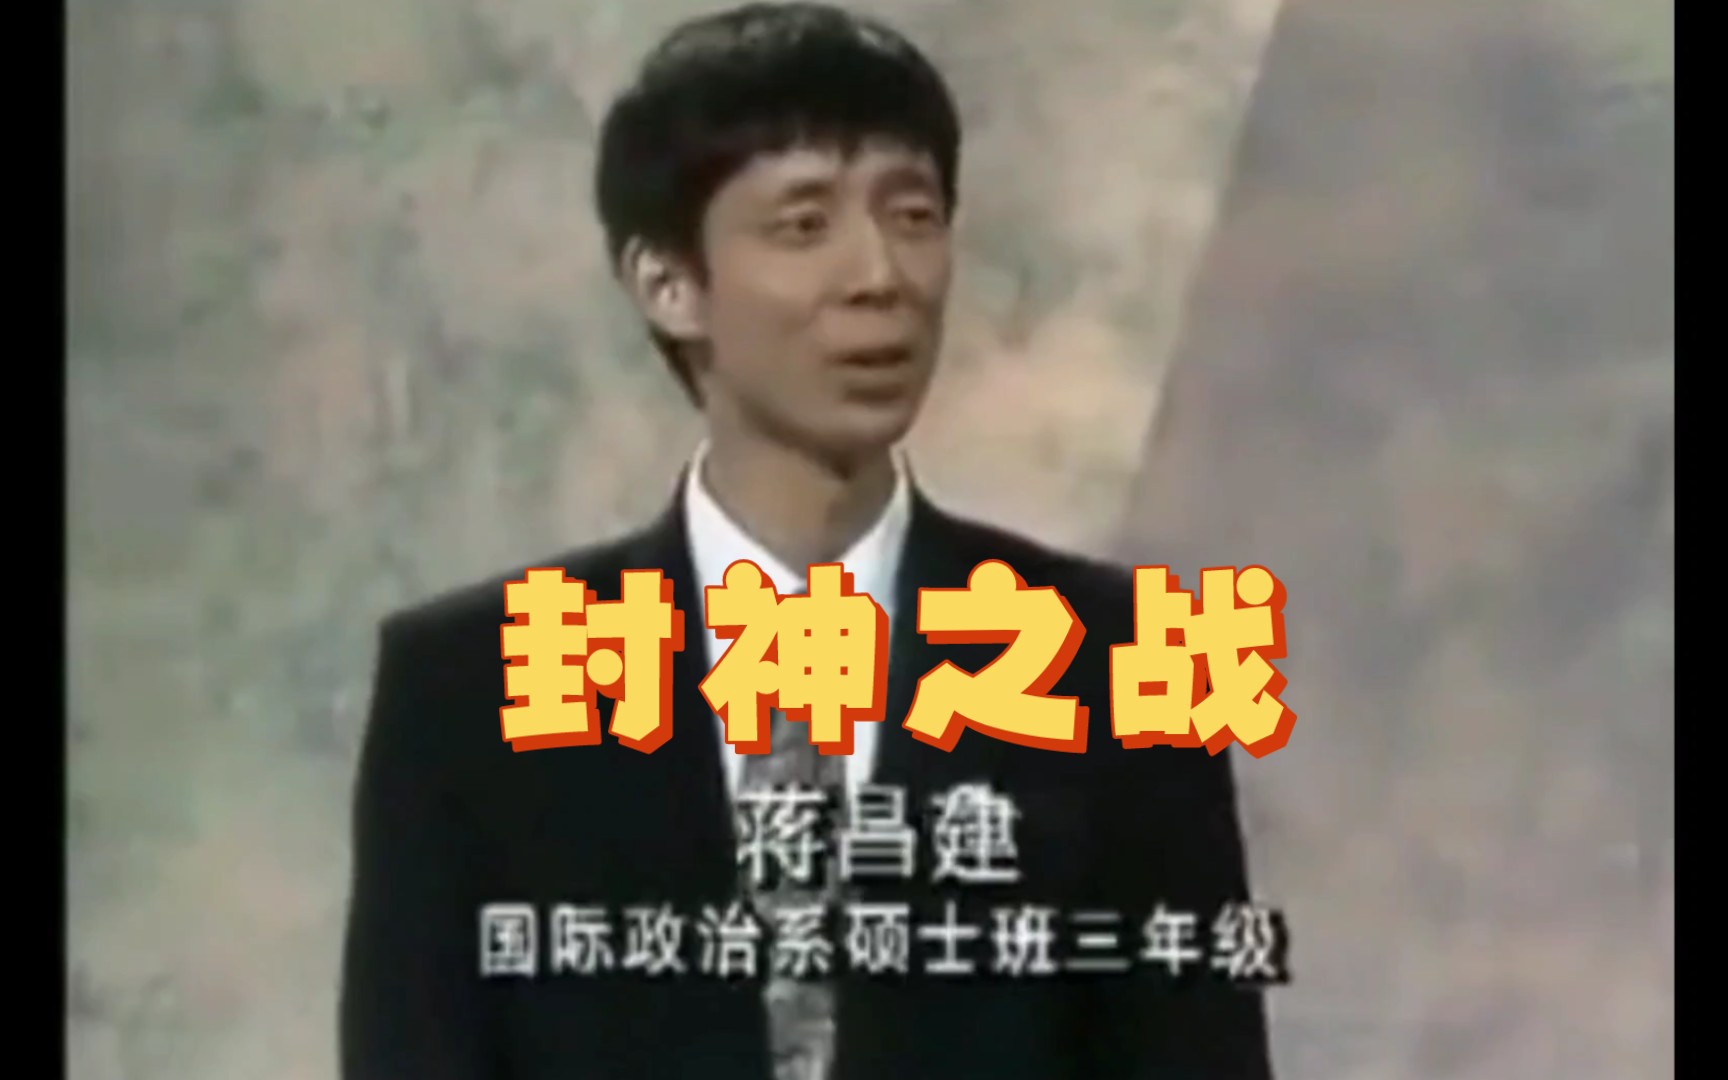 只因高考没考好，年近60岁的蒋昌建仍是副教授 ZT - 2020年7月12日 虎扑存档 - 看帖神器